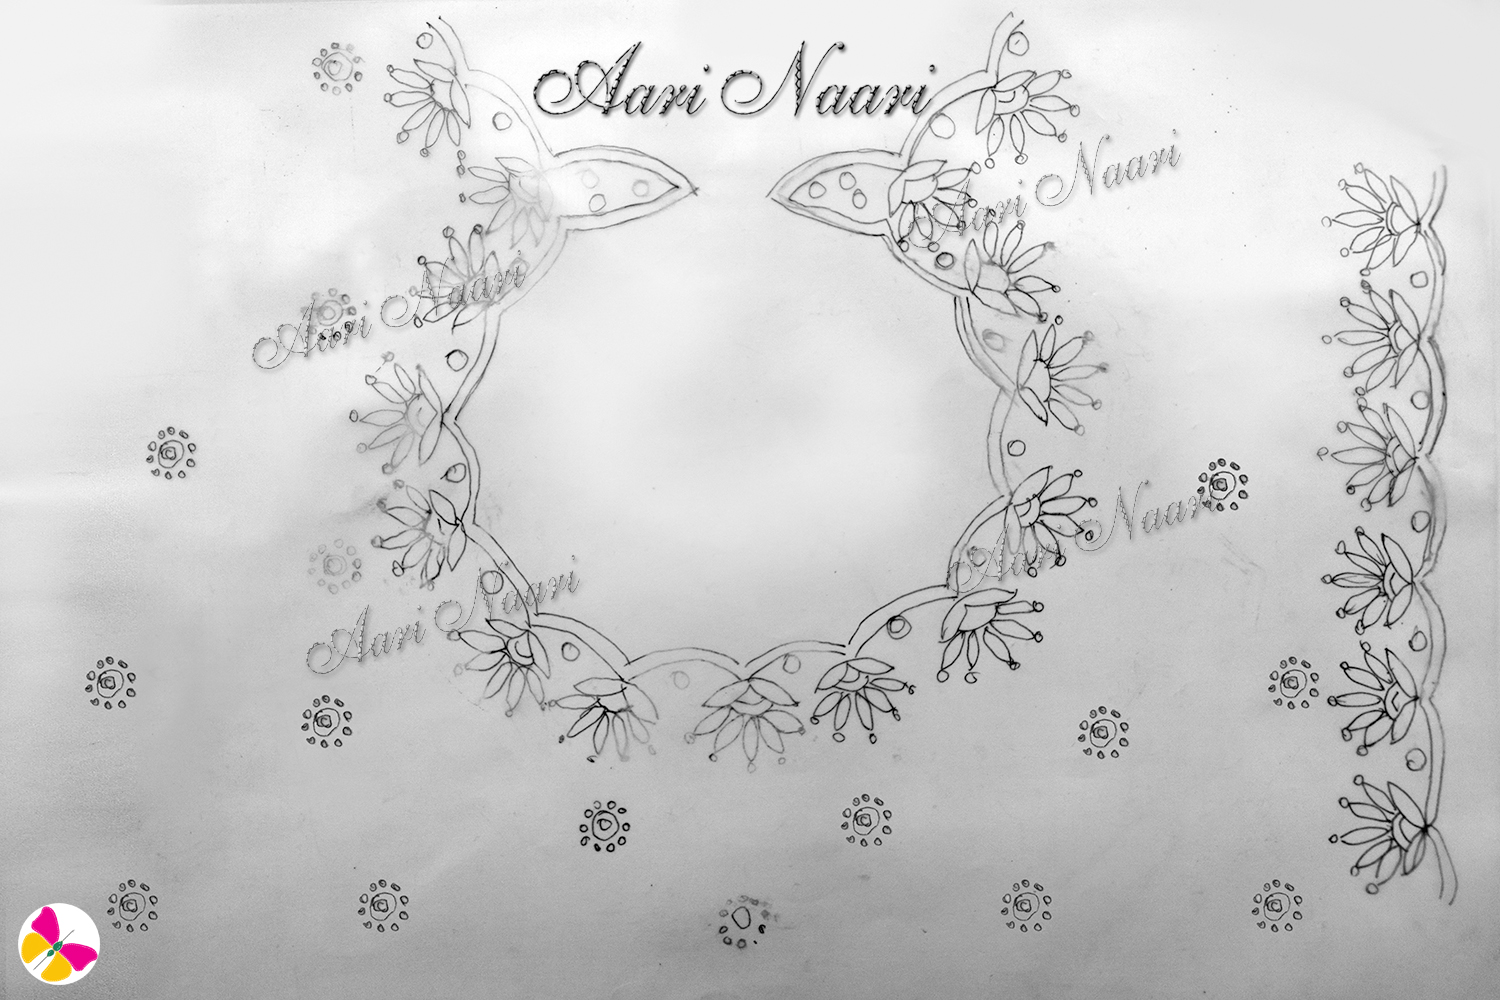 Pot neck flower design Aari tracing paper free download - Aari Naari